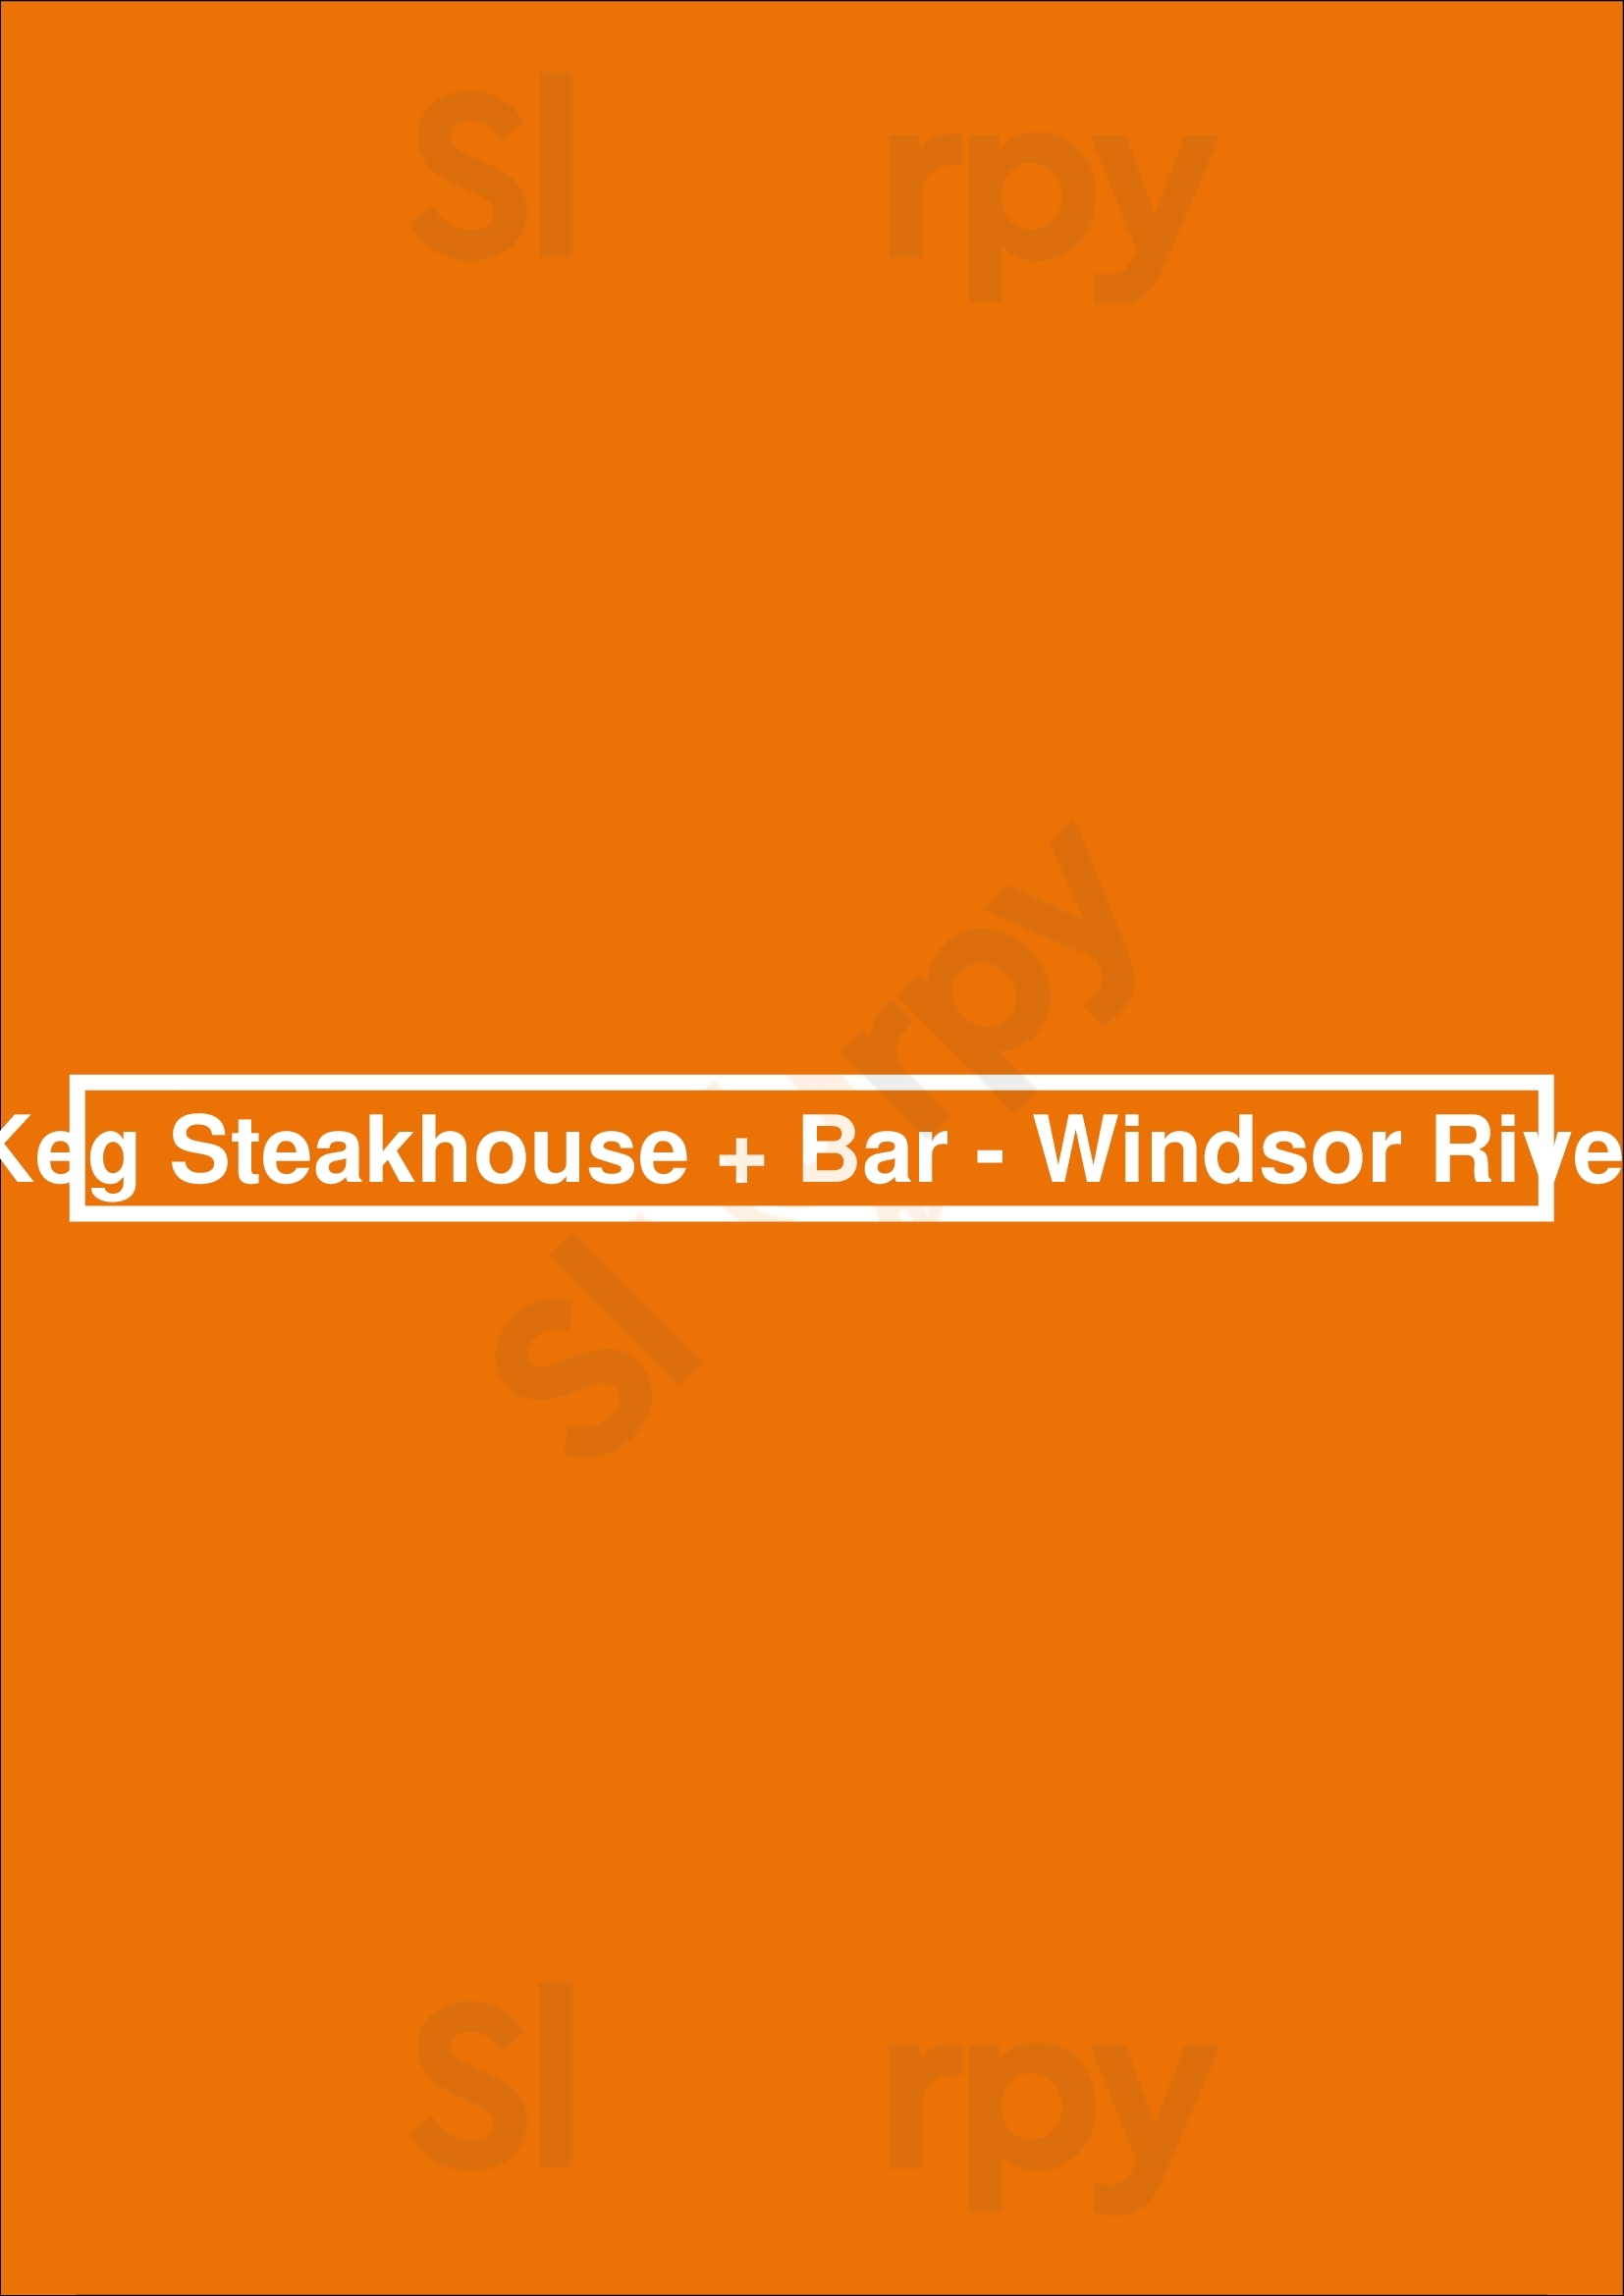 The Keg Steakhouse + Bar - Windsor Riverside Windsor Menu - 1